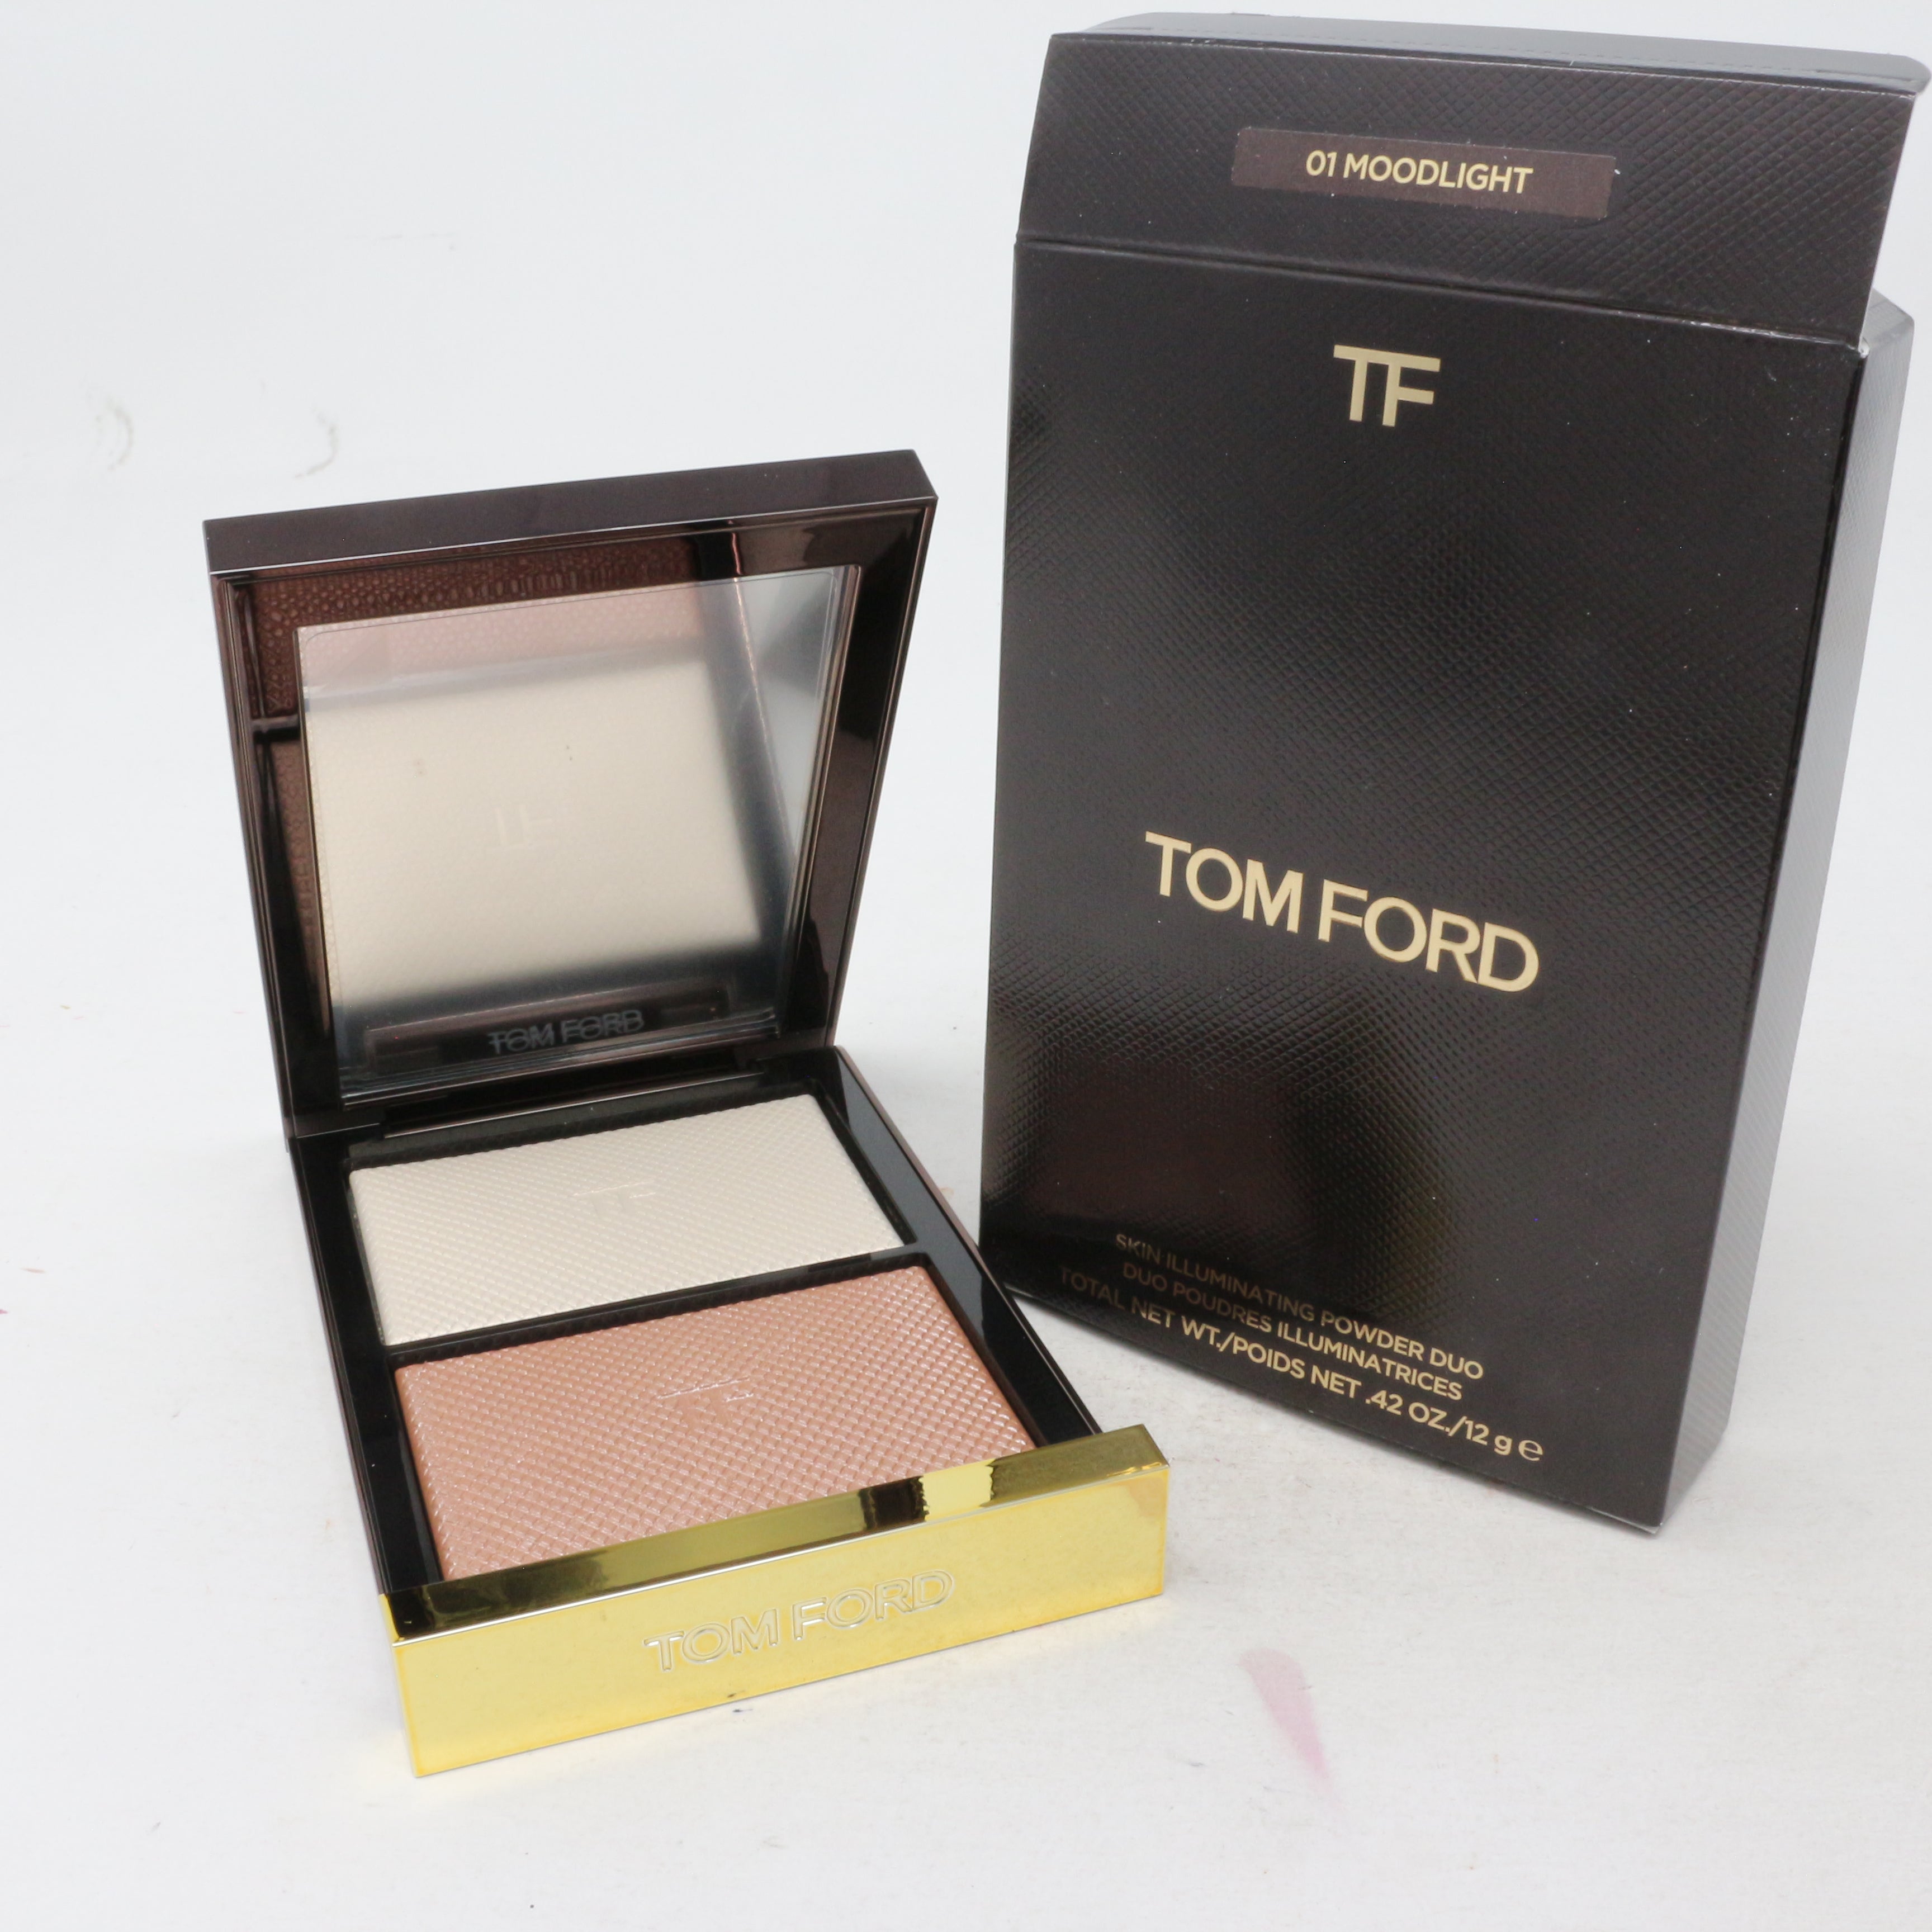 Tom Ford Skin Illuminating Powder Duo 12 g